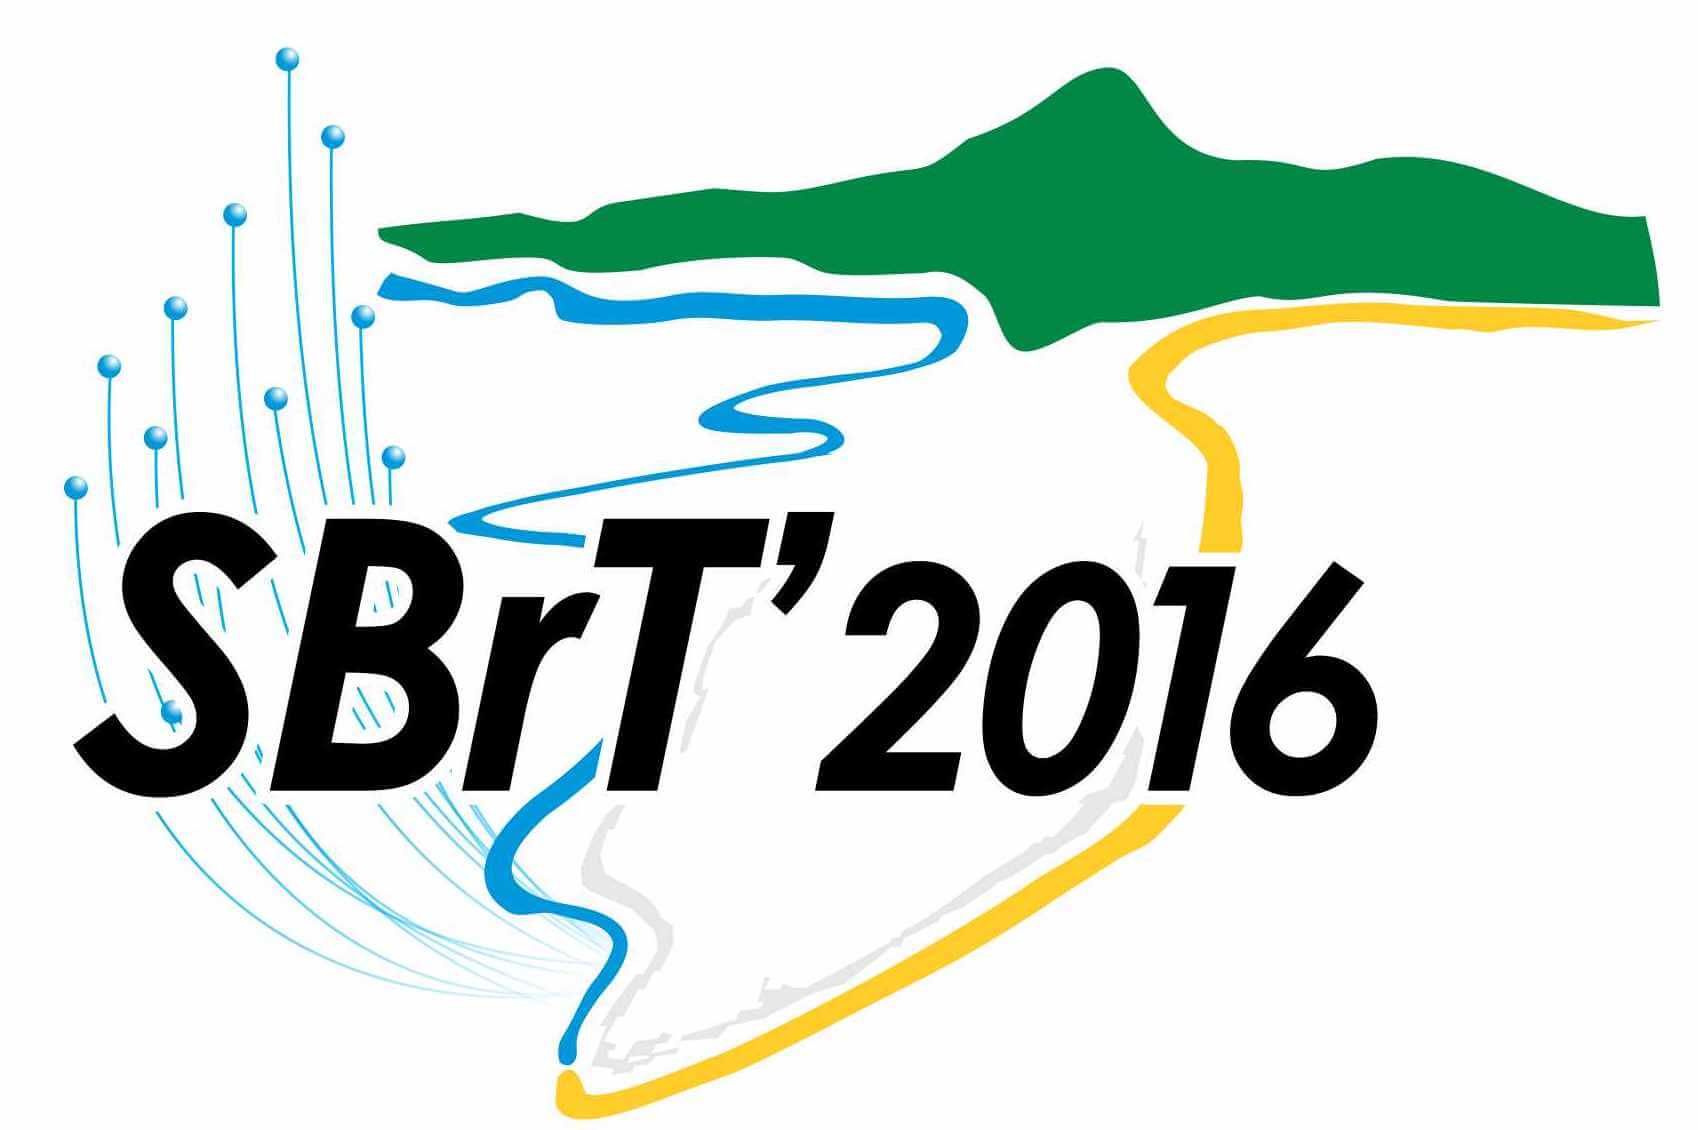 SBrT 2016 - Simpósio Brasileiro de Telecomunicações e Processamento de Sinais